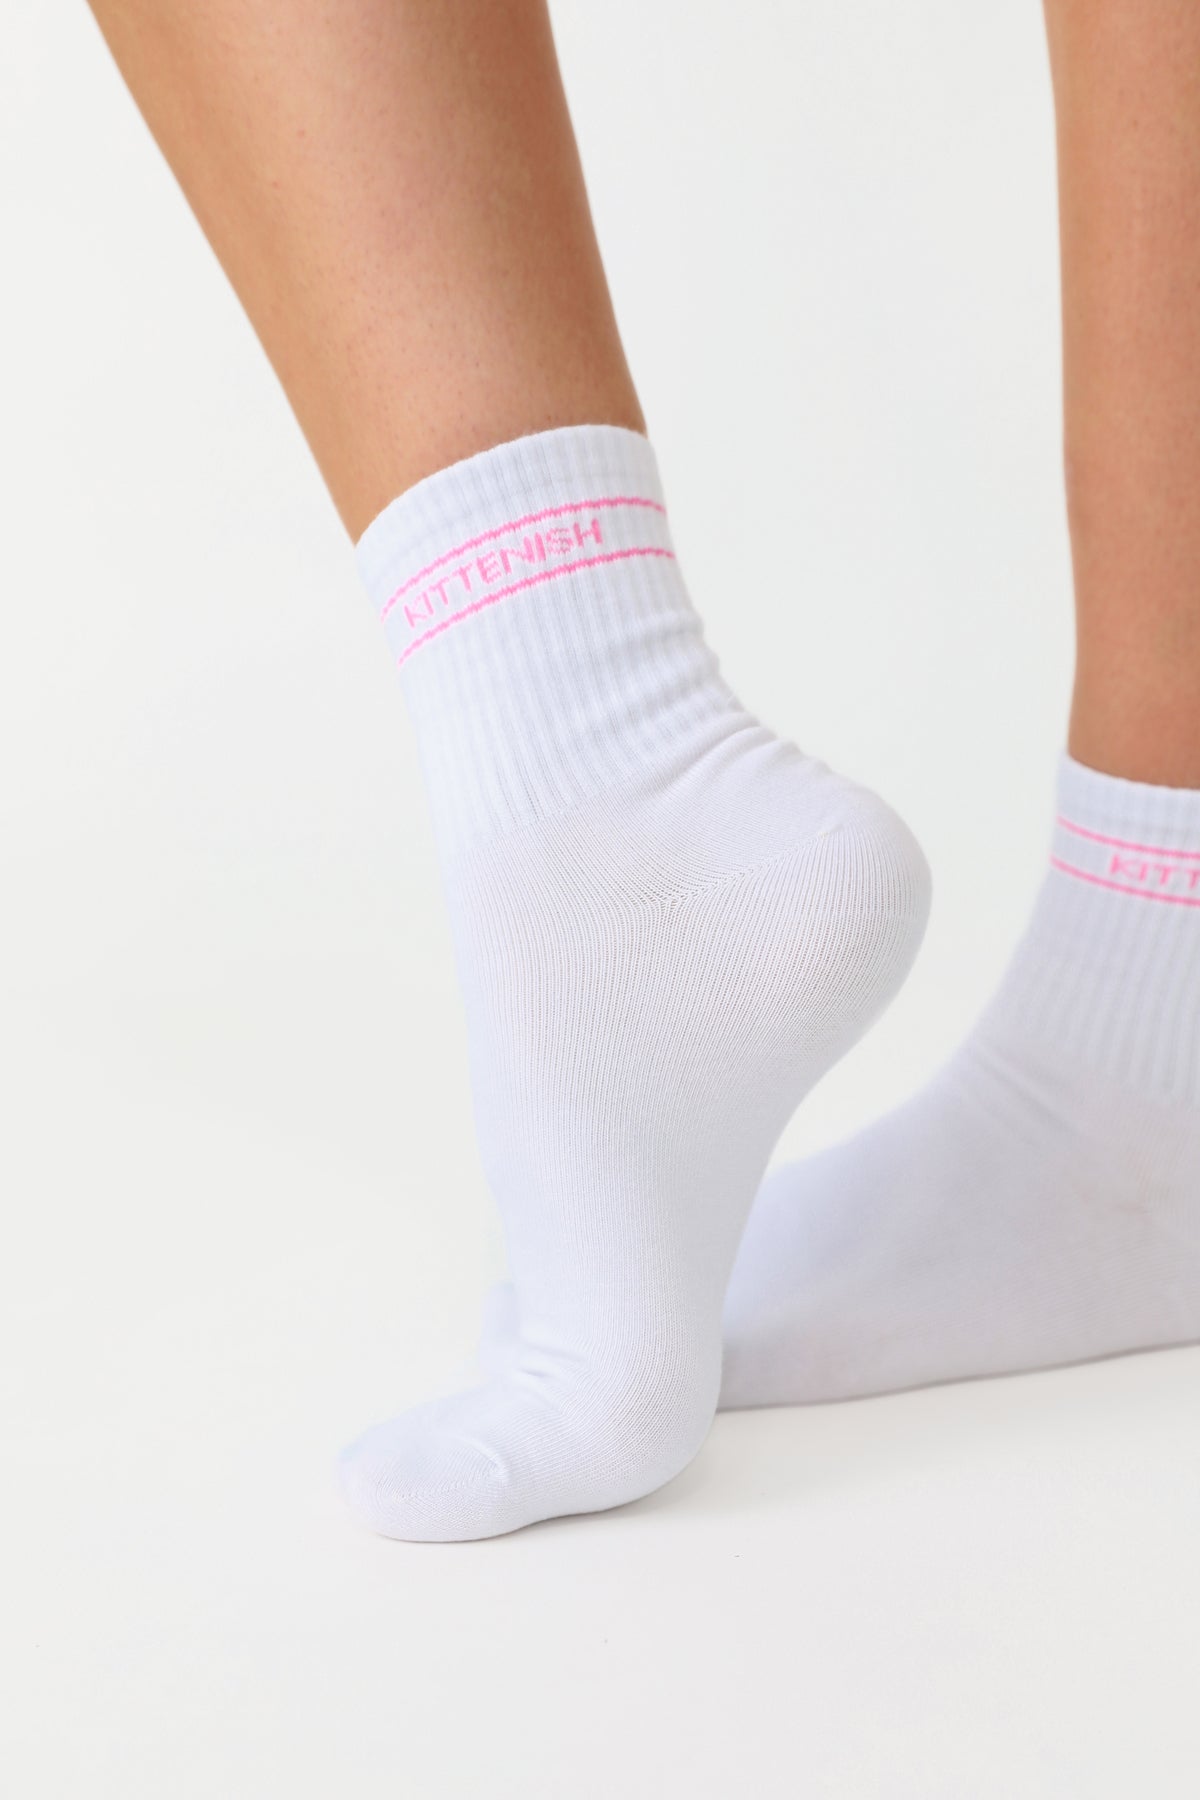 Model wearing pink logo Kittenish socks.